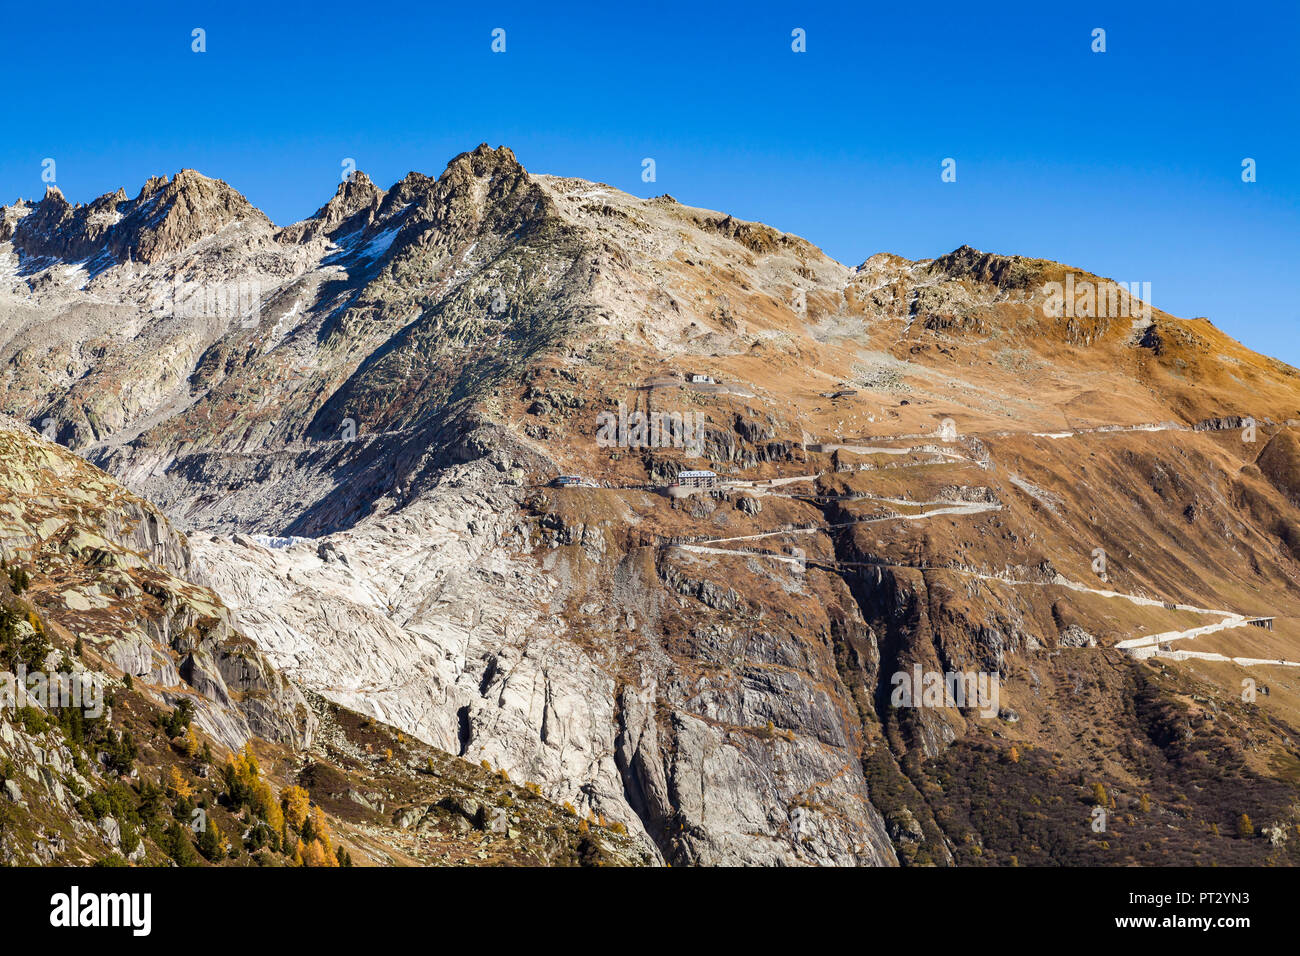 La Svizzera, nel cantone del Vallese, alpi svizzere, sinistra ghiacciaio del Rodano, Furka Pass, mountain pass Foto Stock